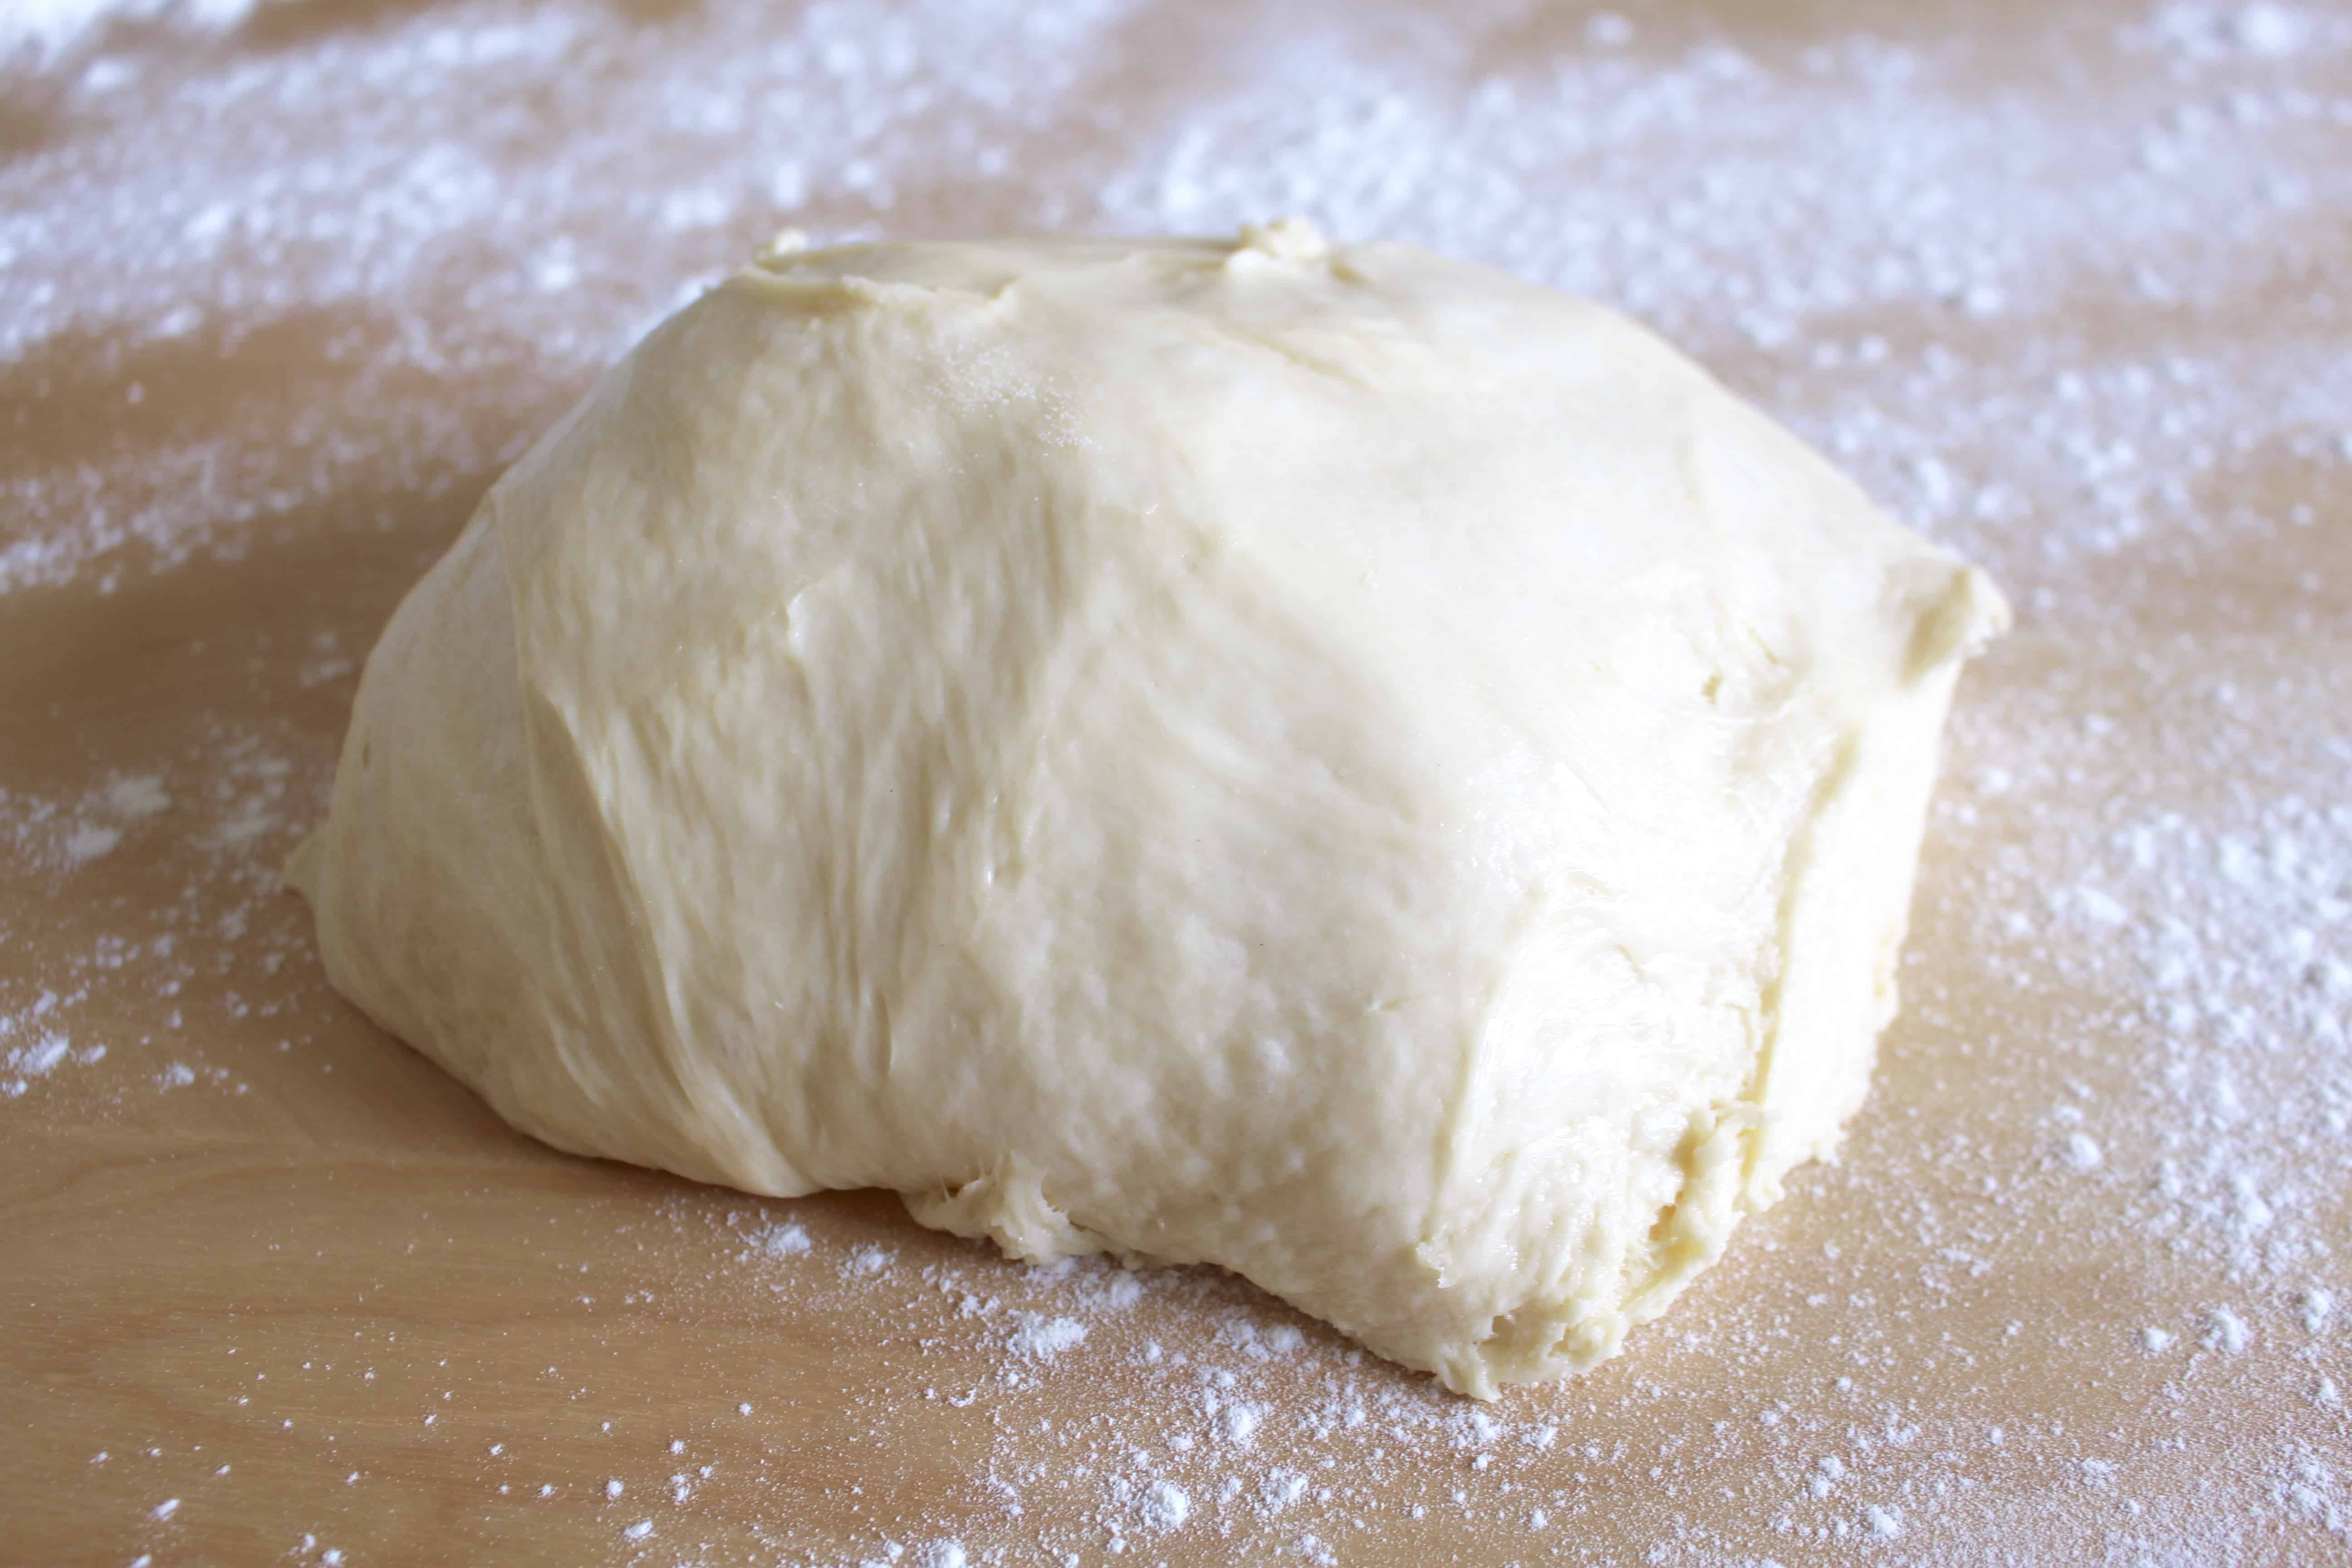 Lemon roll dough